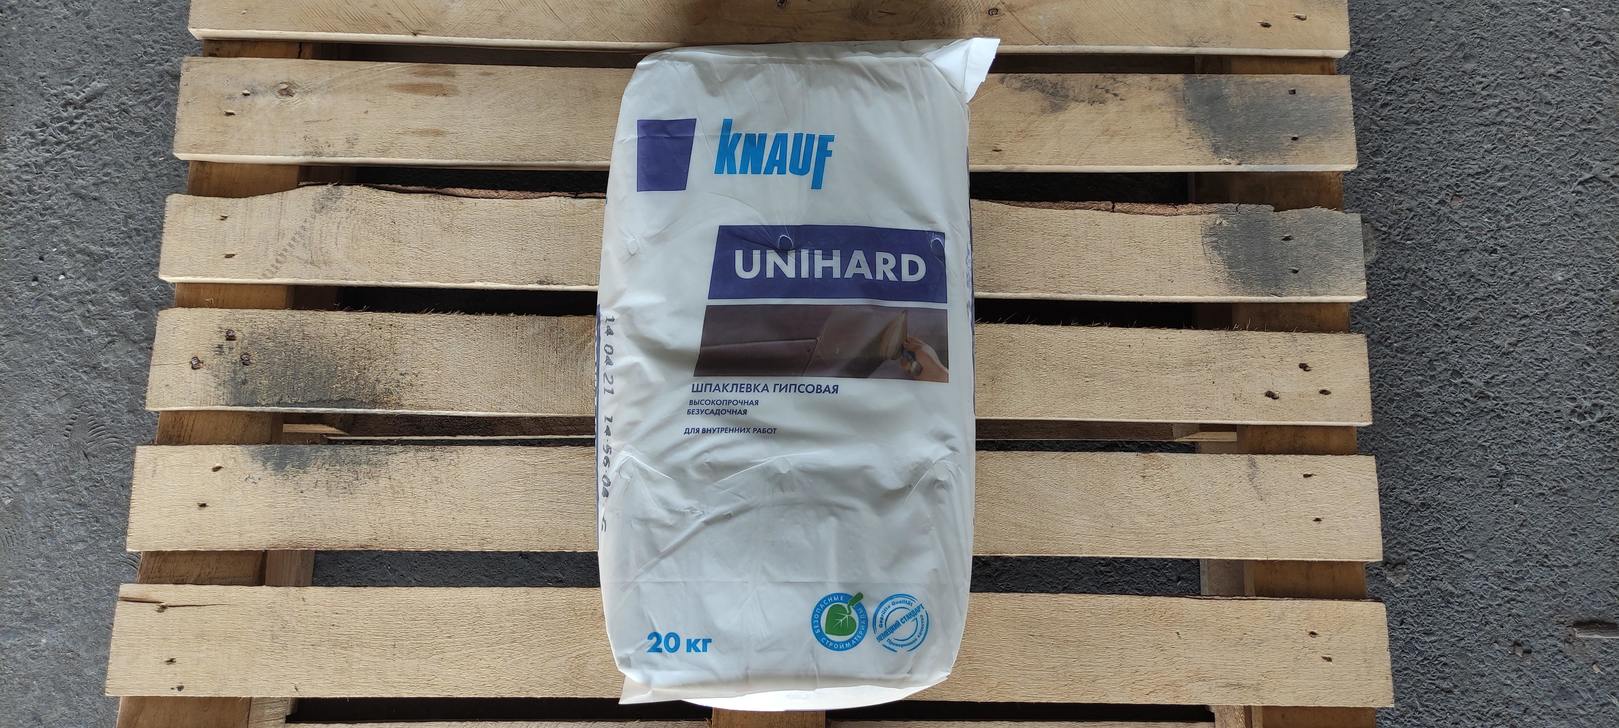 Шпаклевка гипсовая КНАУФ Унихард 20 кг, высокопрочная безусадочная